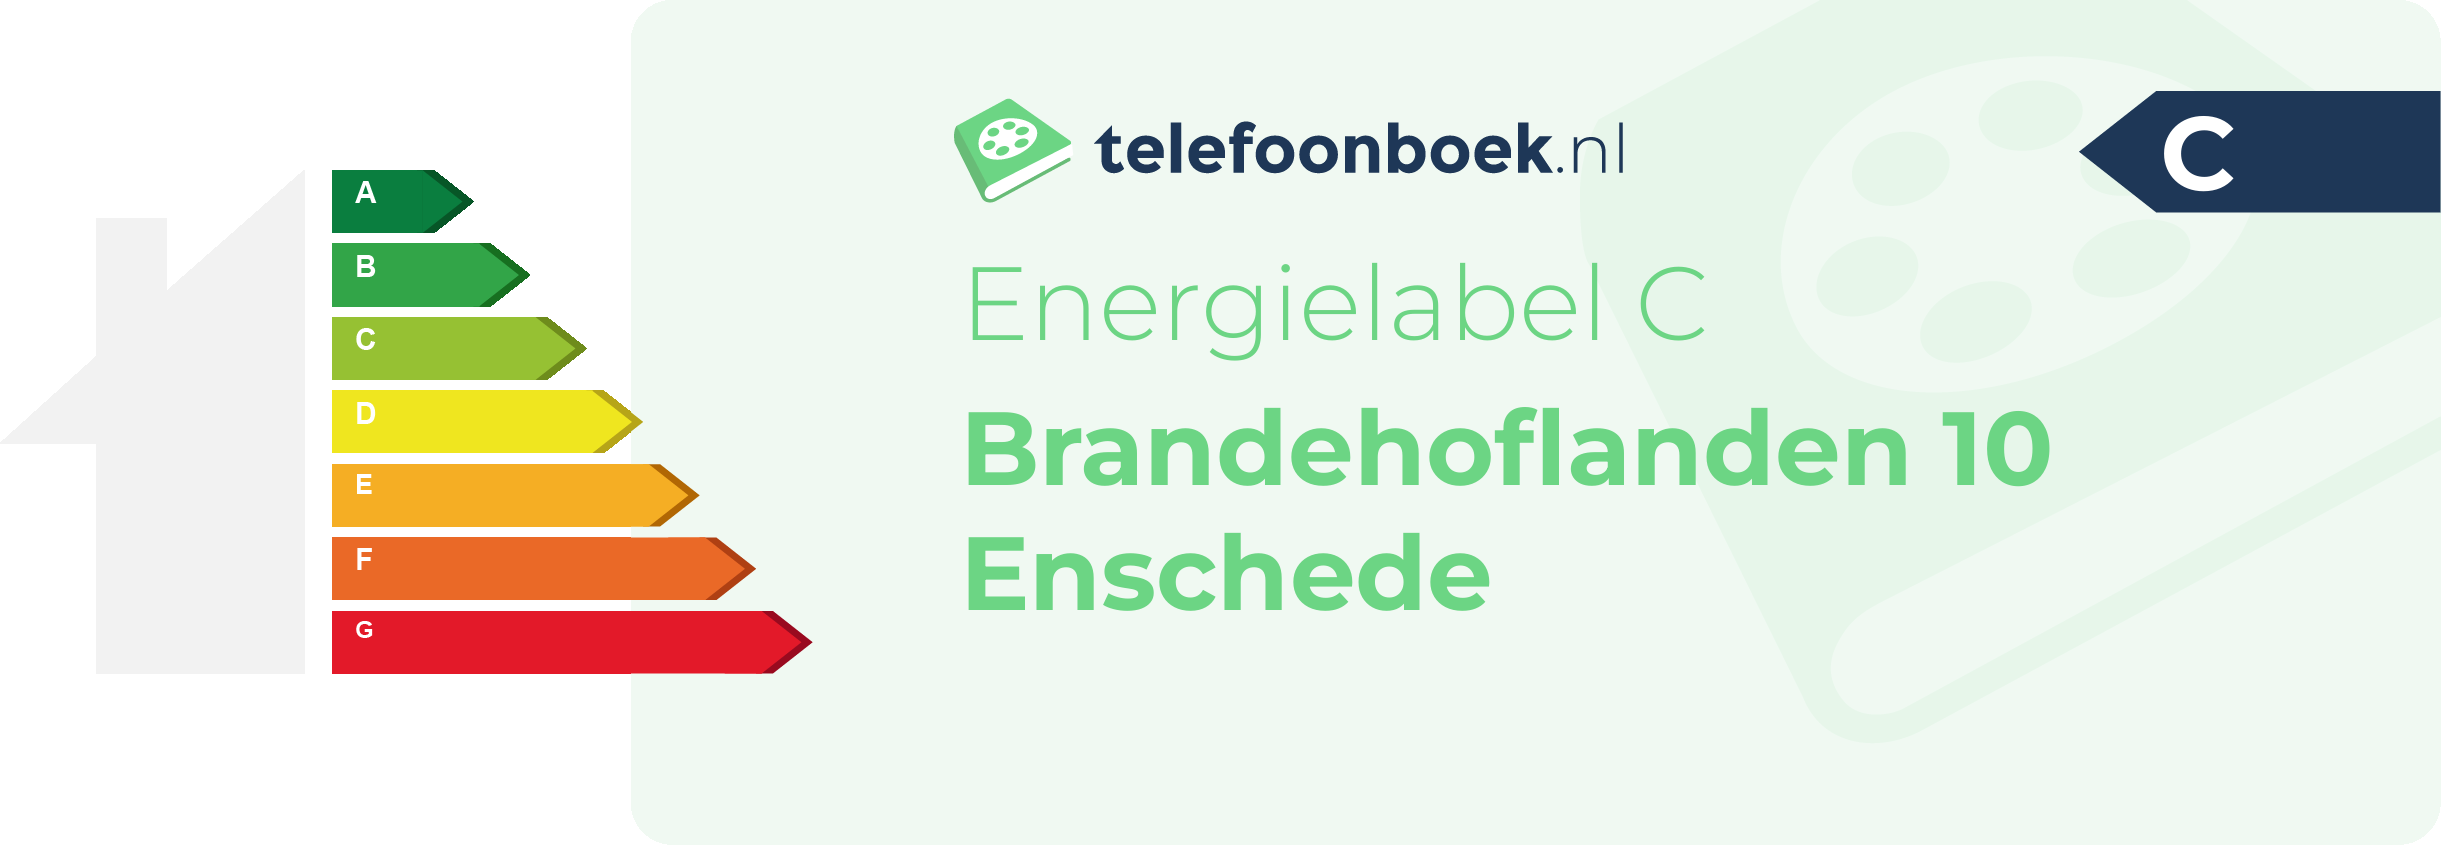 Energielabel Brandehoflanden 10 Enschede